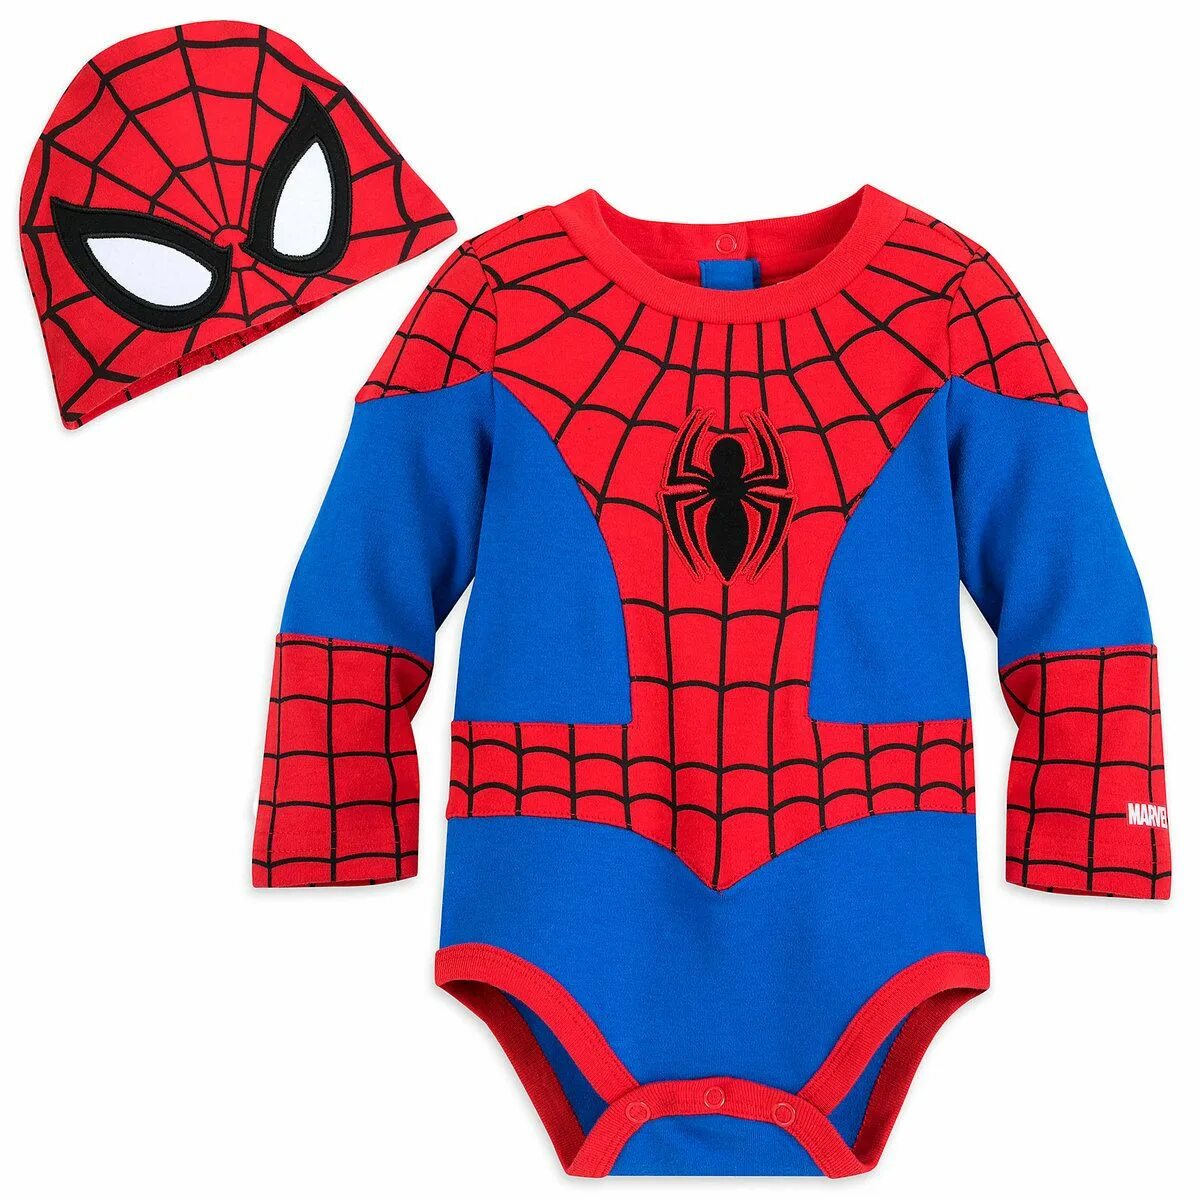 Человек паук для детей 3 лет. Человек паук бейби. Костюм человека паука детский Дисней. Костюм Спайдермена детский. Одежда Spider man детская.